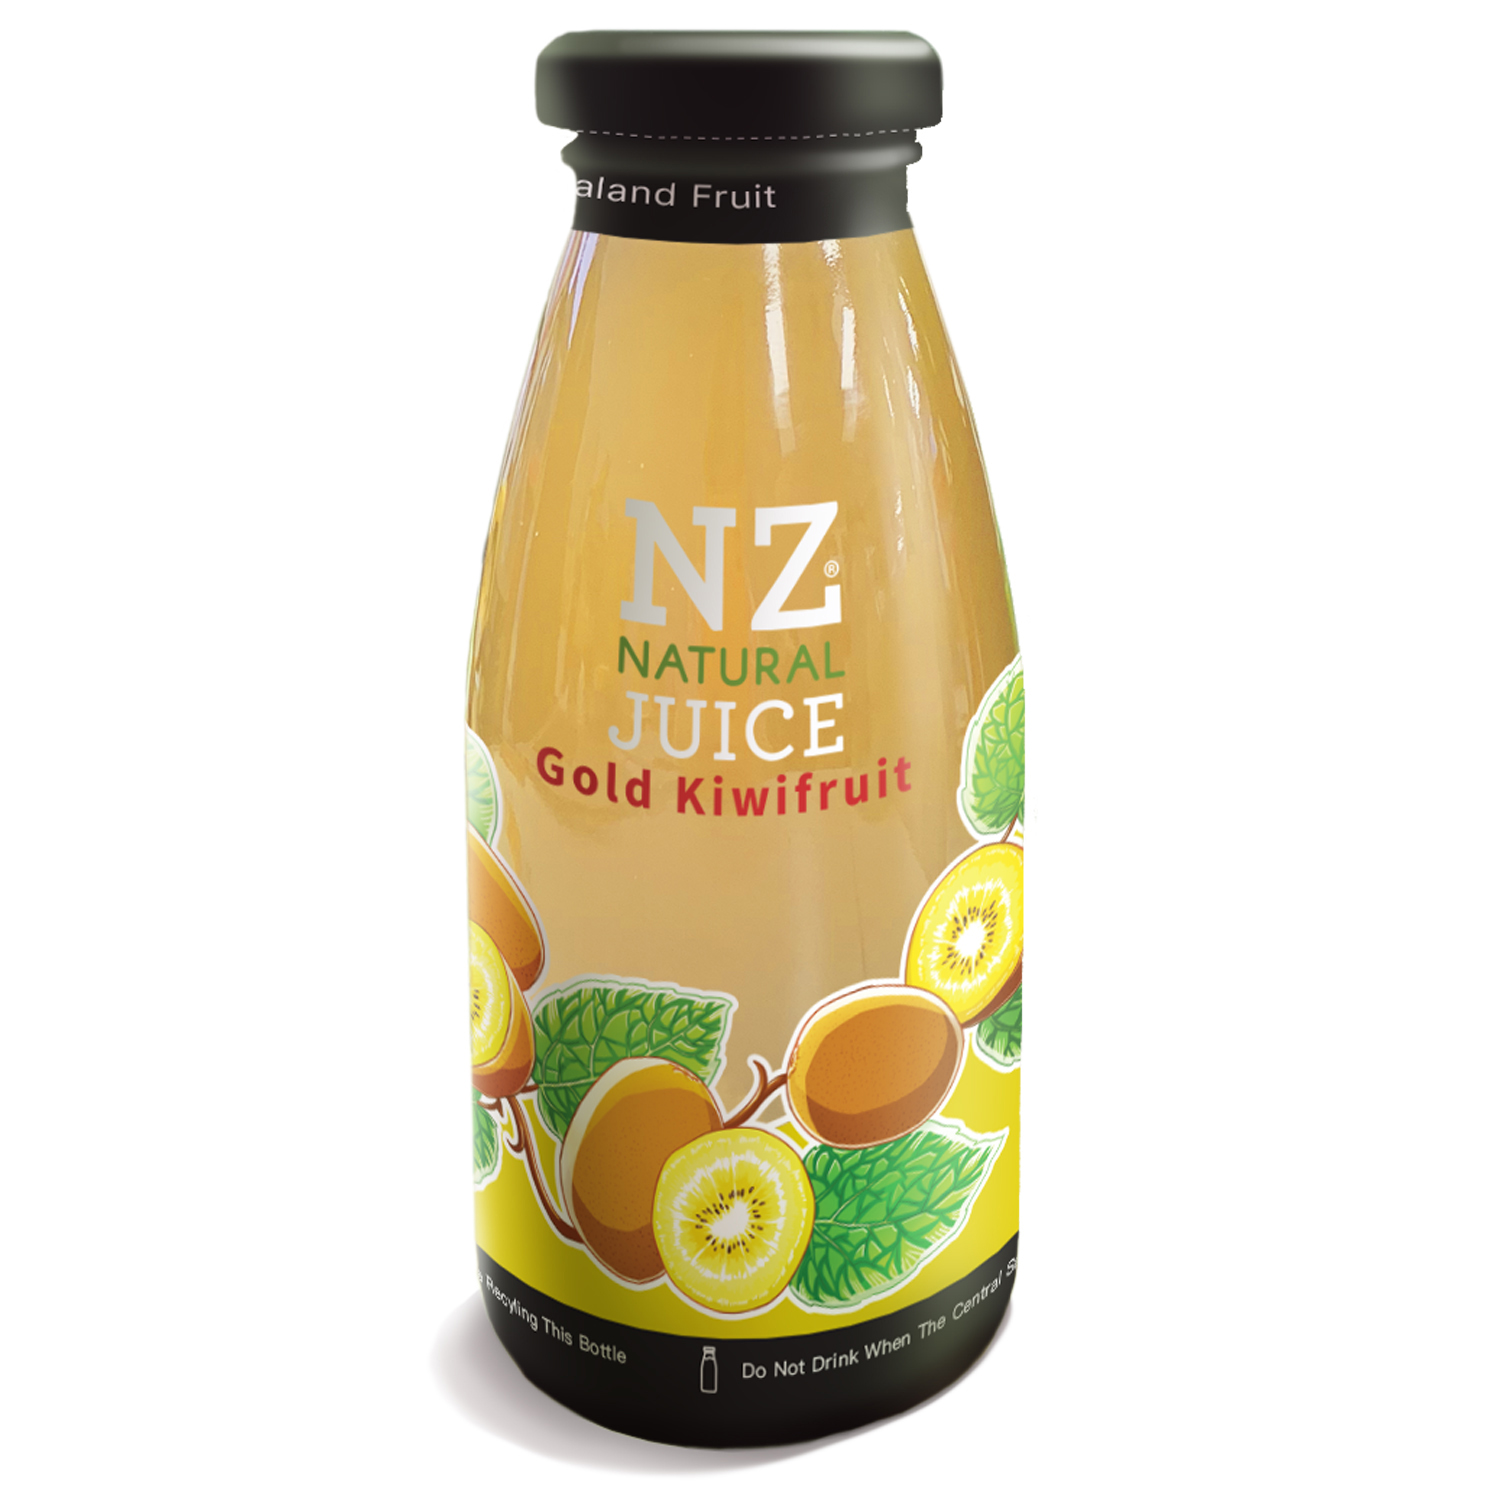 NZ NATURAL JUICE – GOLD KIWIFRUIT 250ML